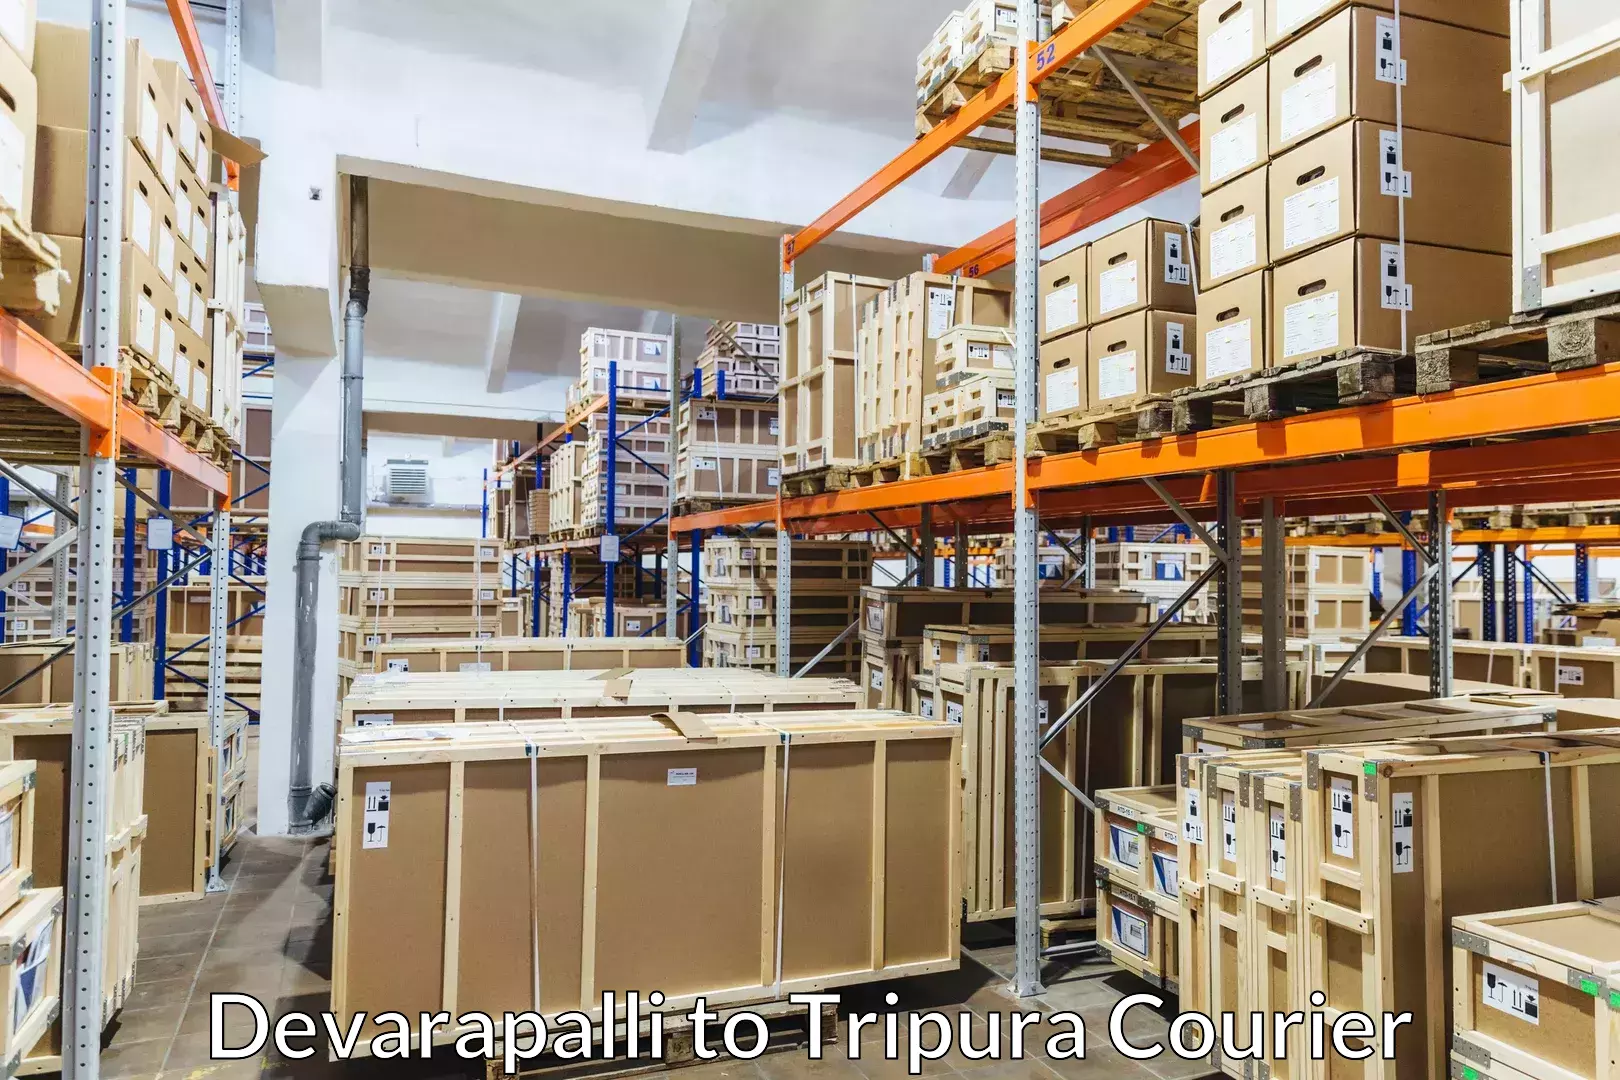 Skilled furniture transport Devarapalli to Udaipur Tripura